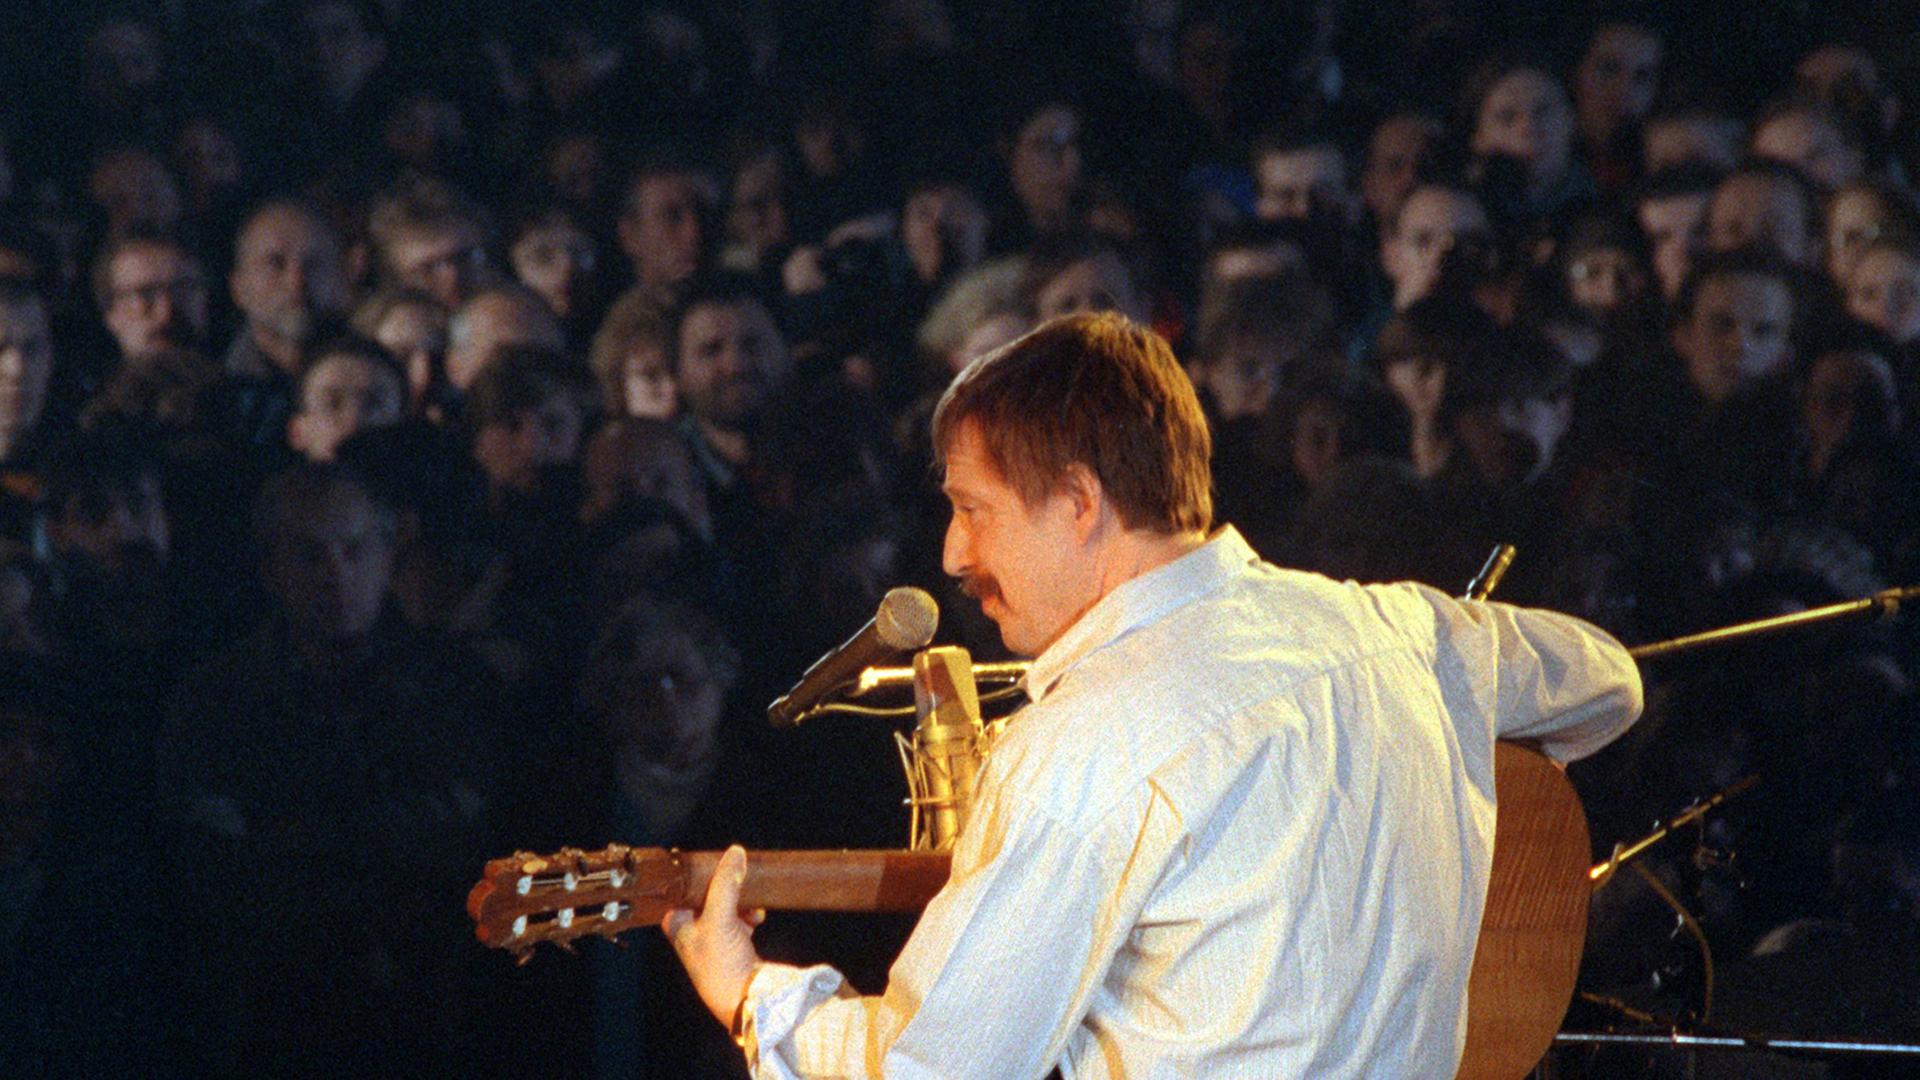 Der Liedermacher Wolf Biermann, aufgenommen am 01.12.1989 in der Leipziger Messehalle bei seinem ersten Konzert in der DDR nach dreizehnjährigem Exil. Der Auftritt des 1976 ausgebürgerten Künstlers wurde nach dem Fall der Mauer am 9. November 1989 möglich.